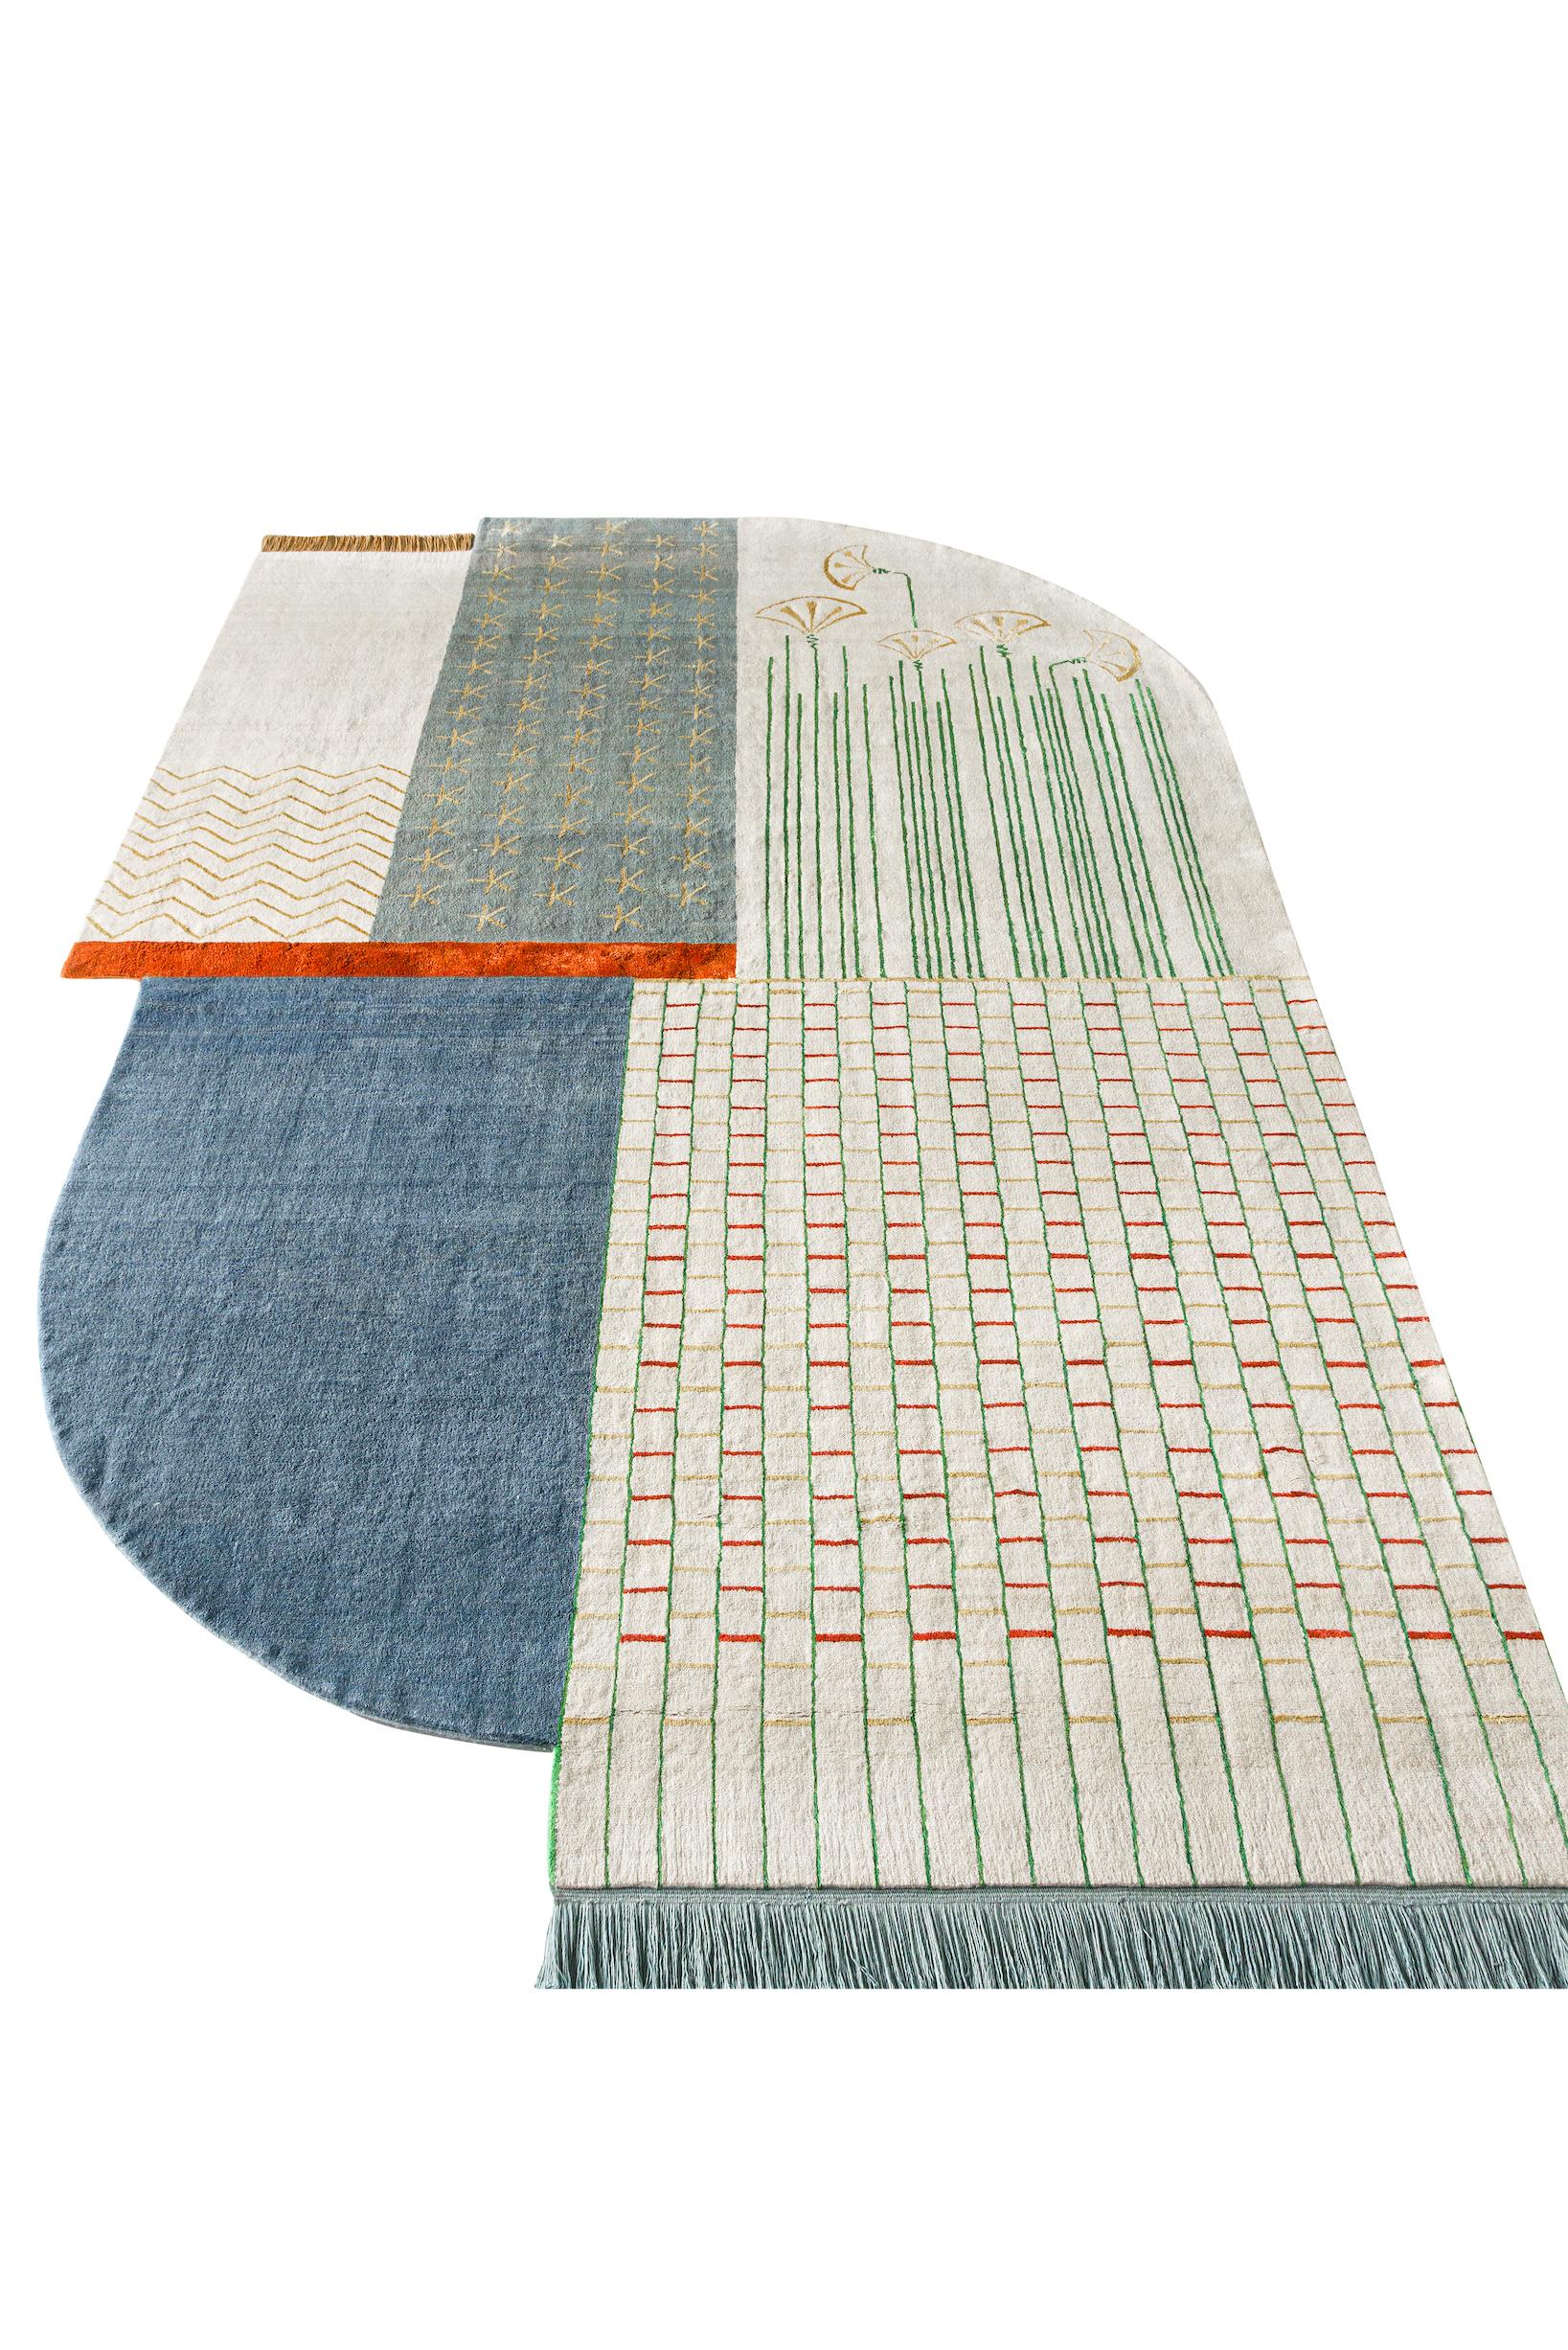 Über den Teppich:
Dies ist ein handgeknüpfter Teppich mit 160.000 Knoten pro Quadratmeter in einer Doppelknotenkonstruktion. Das Obermaterial besteht aus ägyptischer Wolle mit Bambusseideneinlagen, Kette und Schuss sind aus 100 % ägyptischer